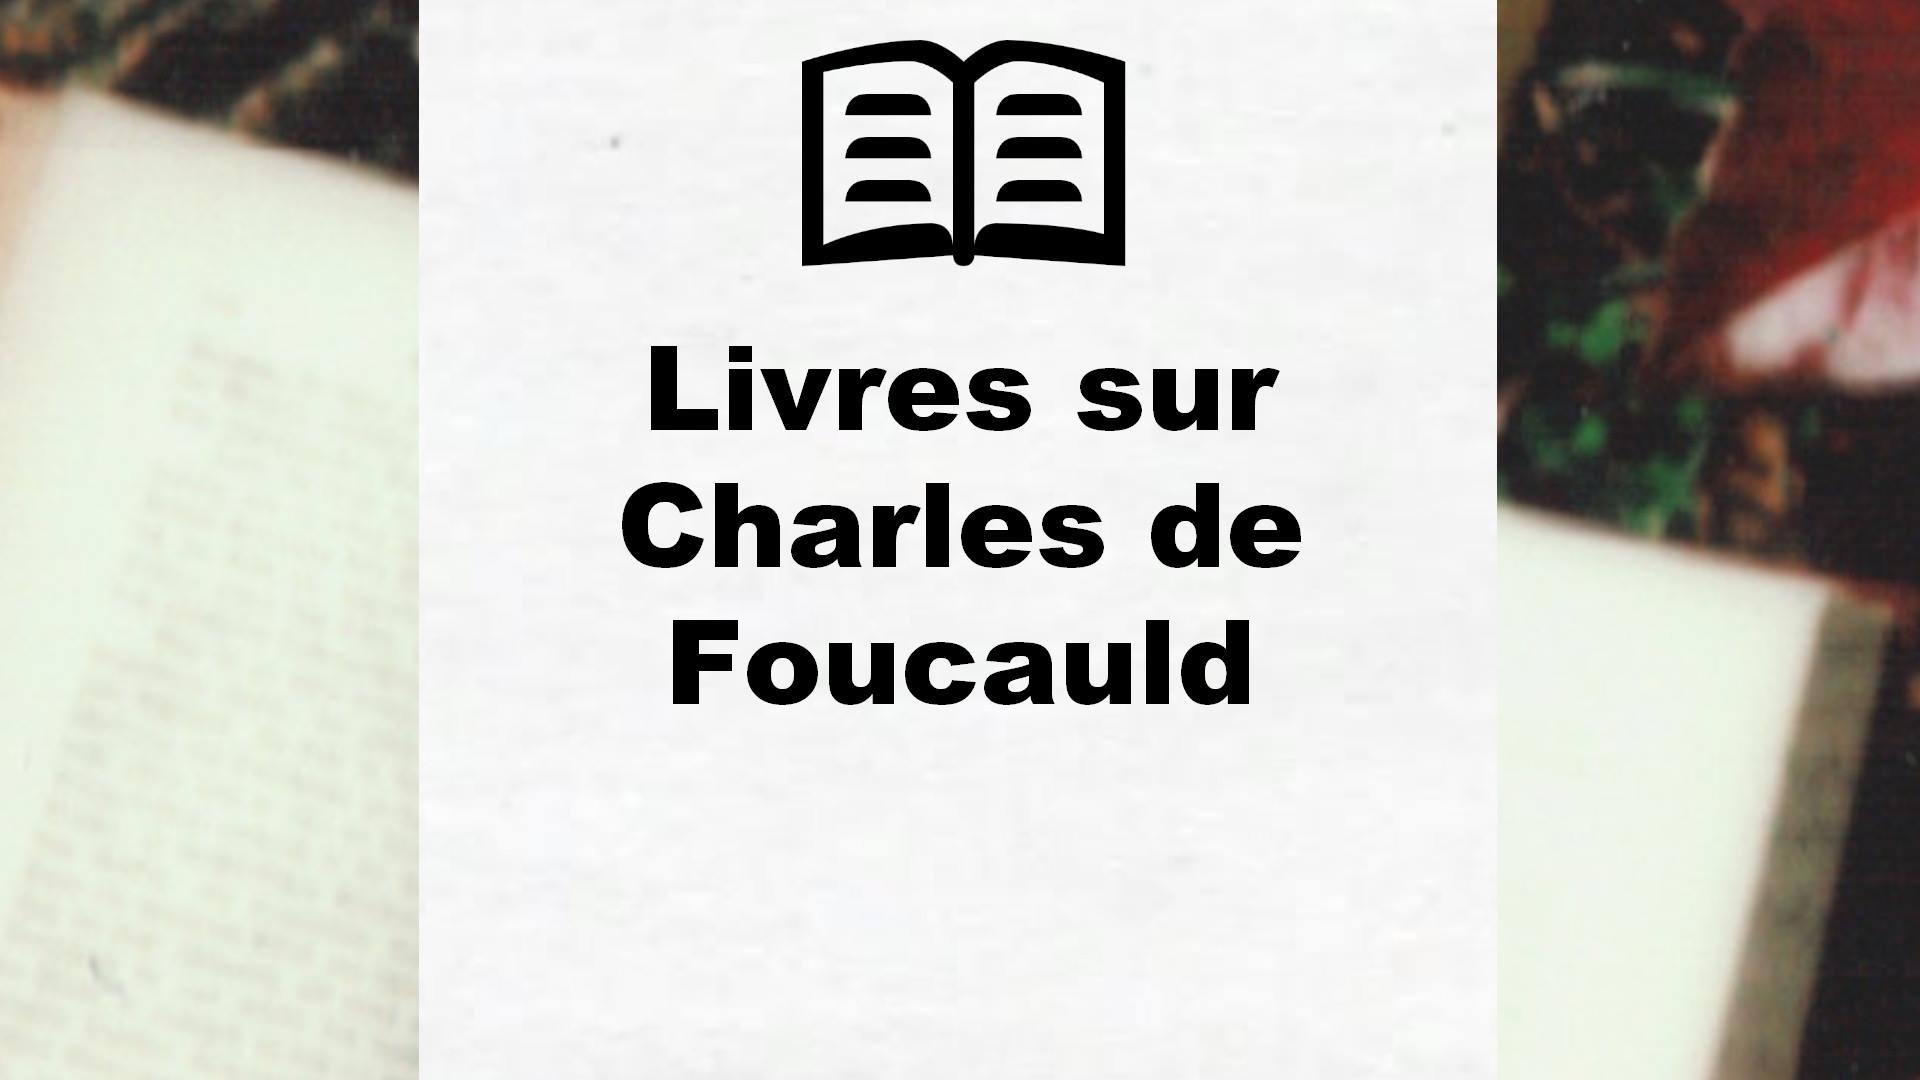 Livres sur Charles de Foucauld